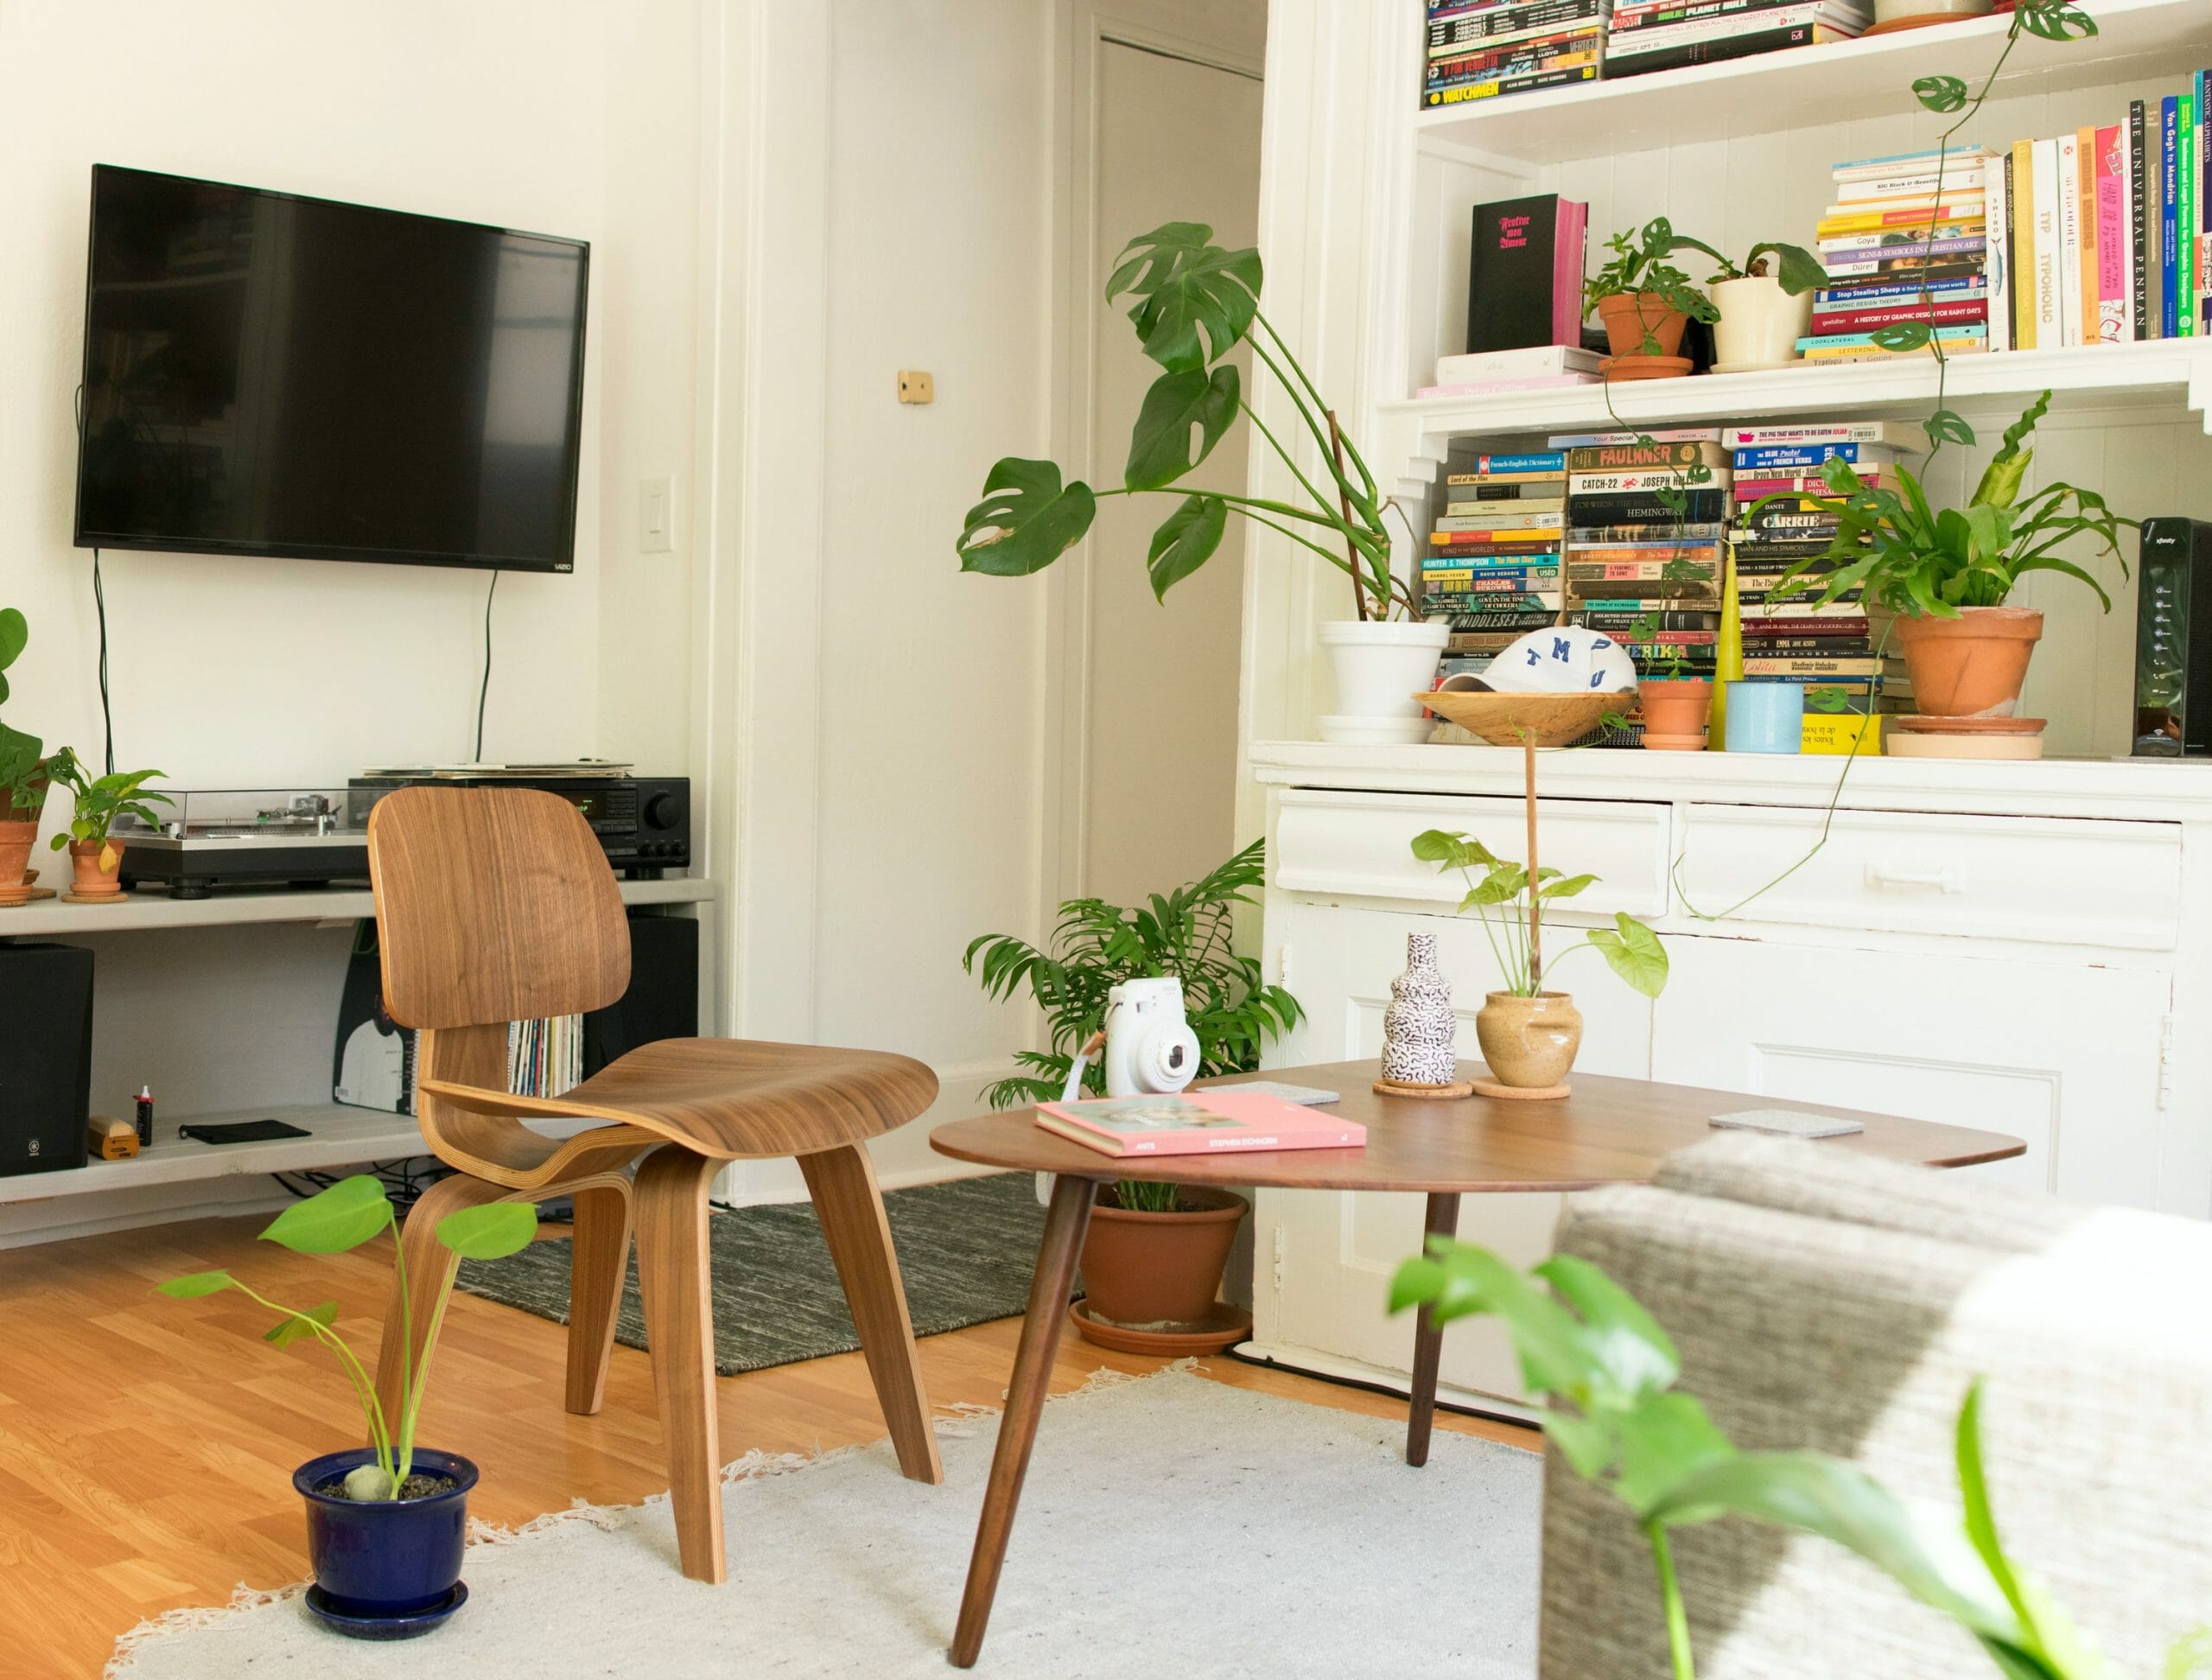 Interiores que incorporan elementos ecológicos, materiales sostenibles y variedad de plantas
